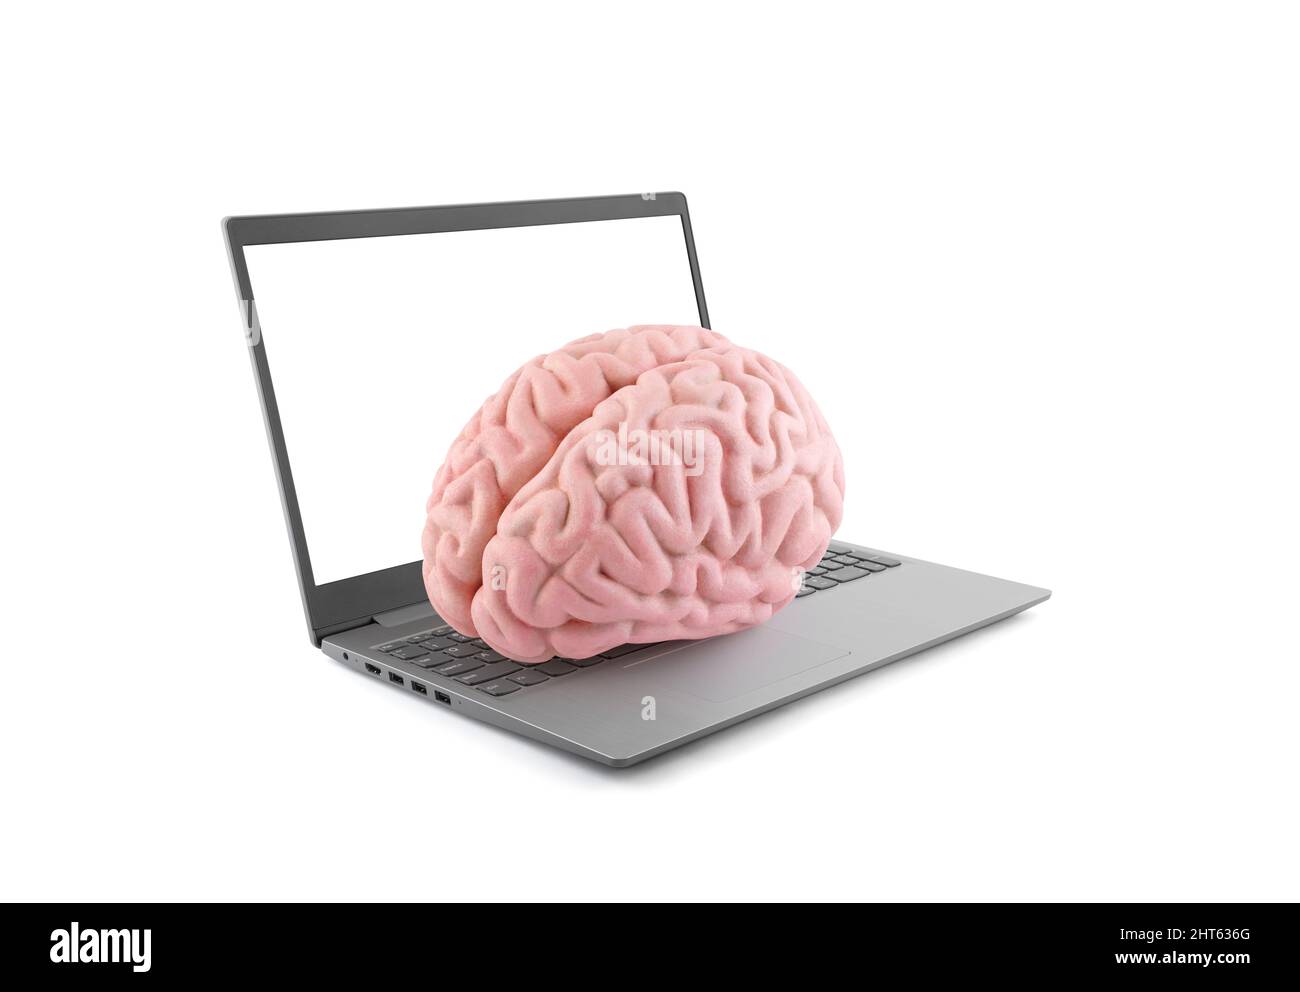 Cerveau humain sur ordinateur portable isolé sur fond blanc Banque D'Images